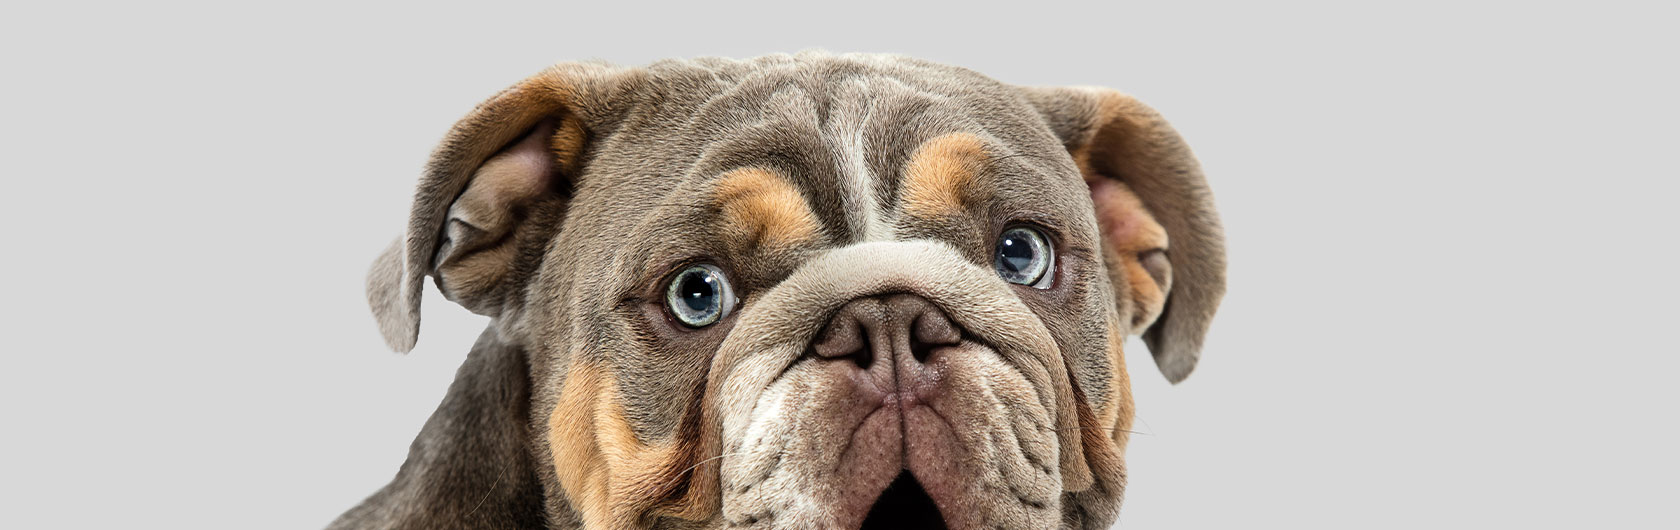 Mantener limpias las orejas de los perros y alimento para perros de calidad nutribon